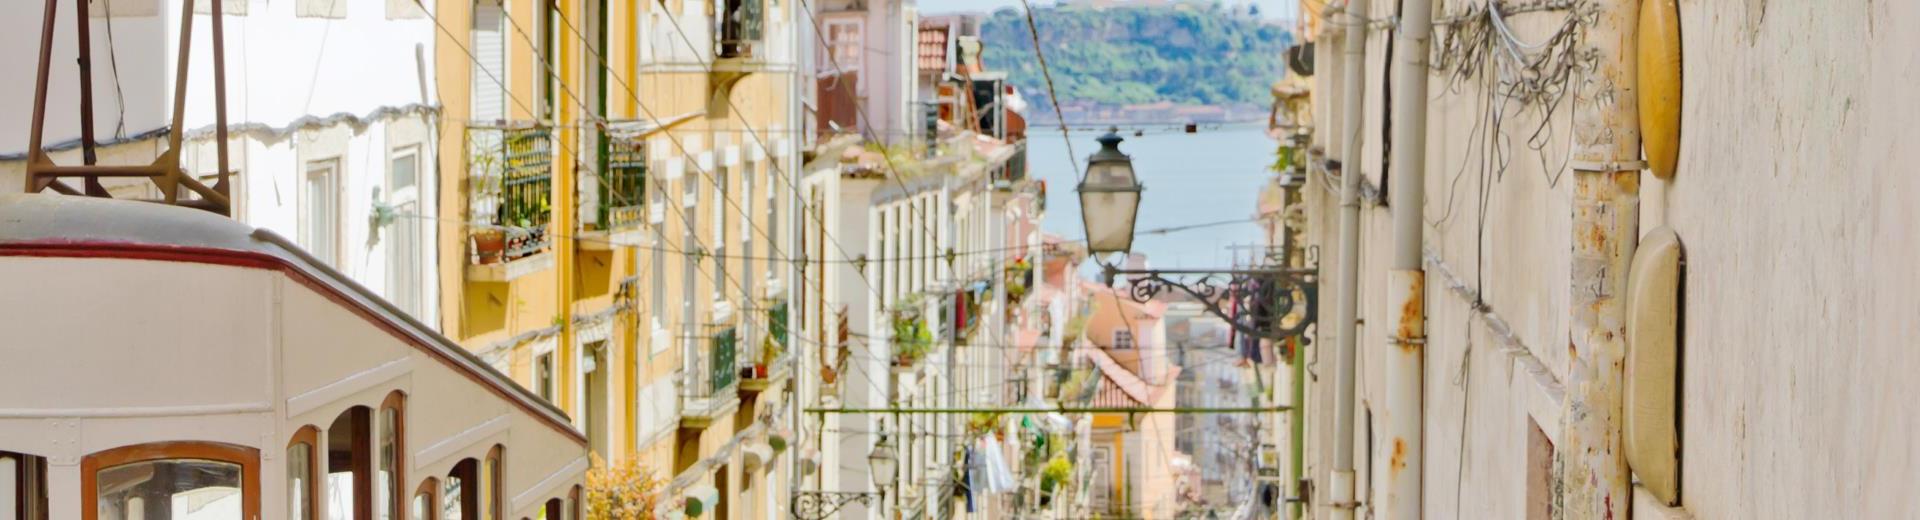 Boek een appartement in de omgeving van Lissabon - geniet van de prachtige stad en de kust - Casamundo